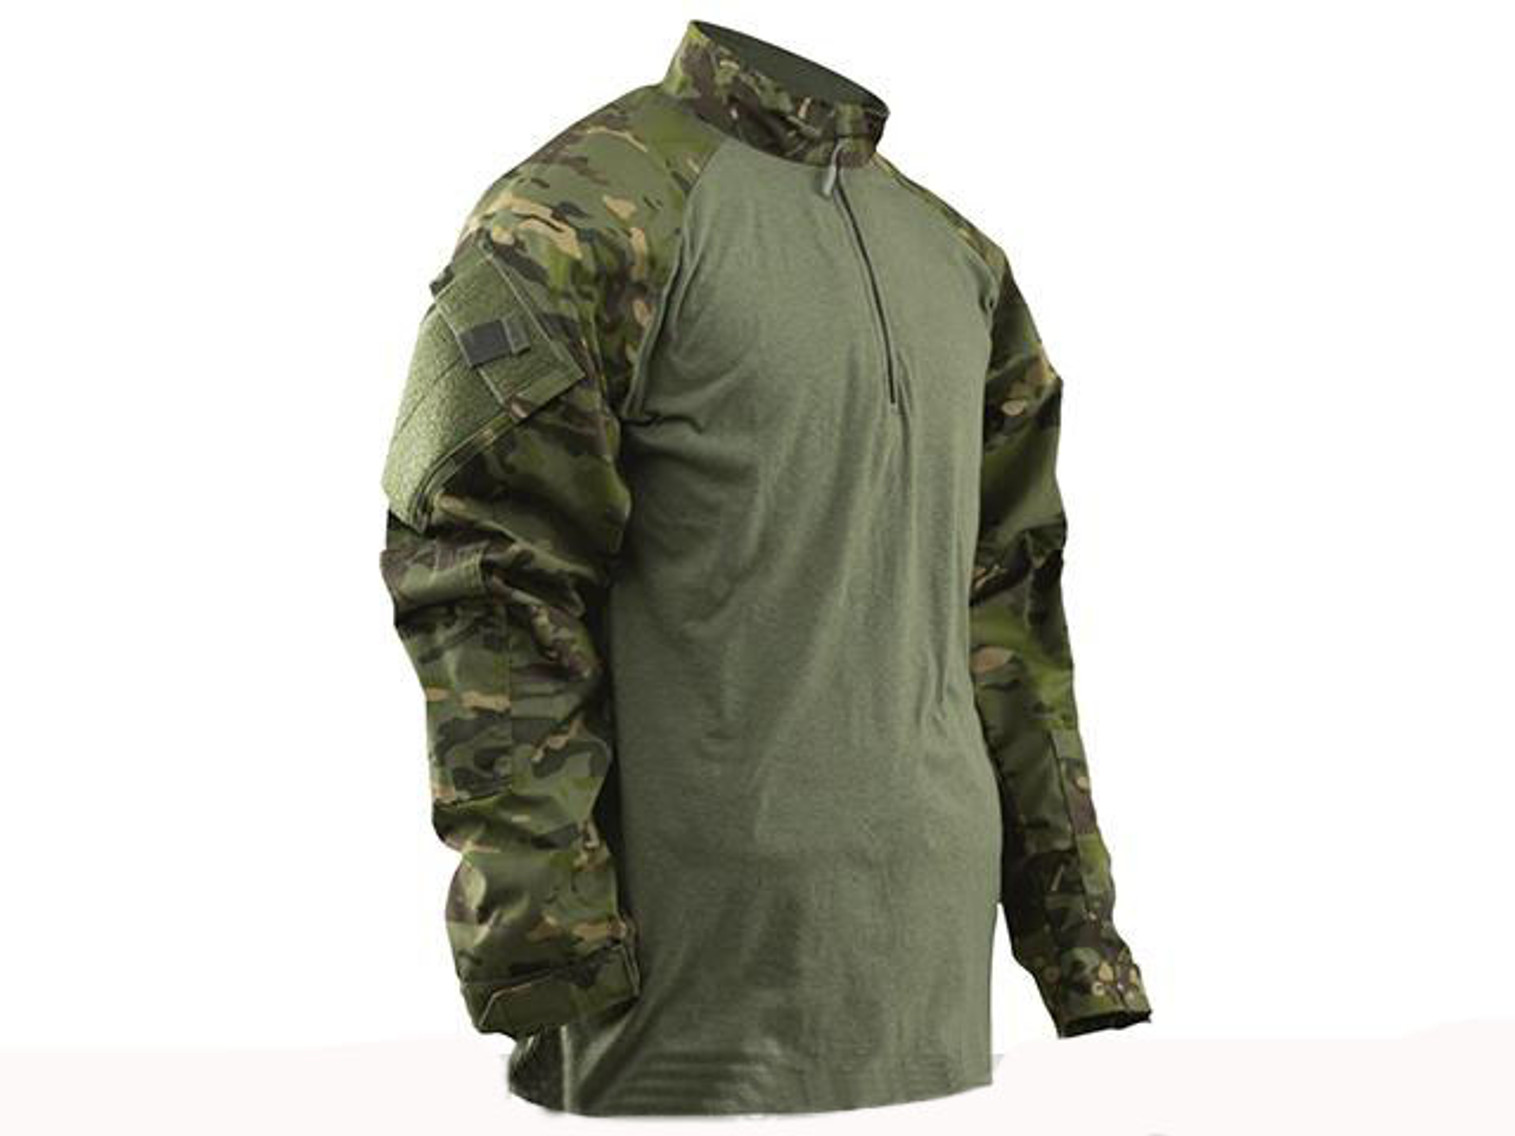 Tru-Spec Tactical Response Uniform 1/4 Zip Combat Shirt - Multicam Tropic (Size: Small)